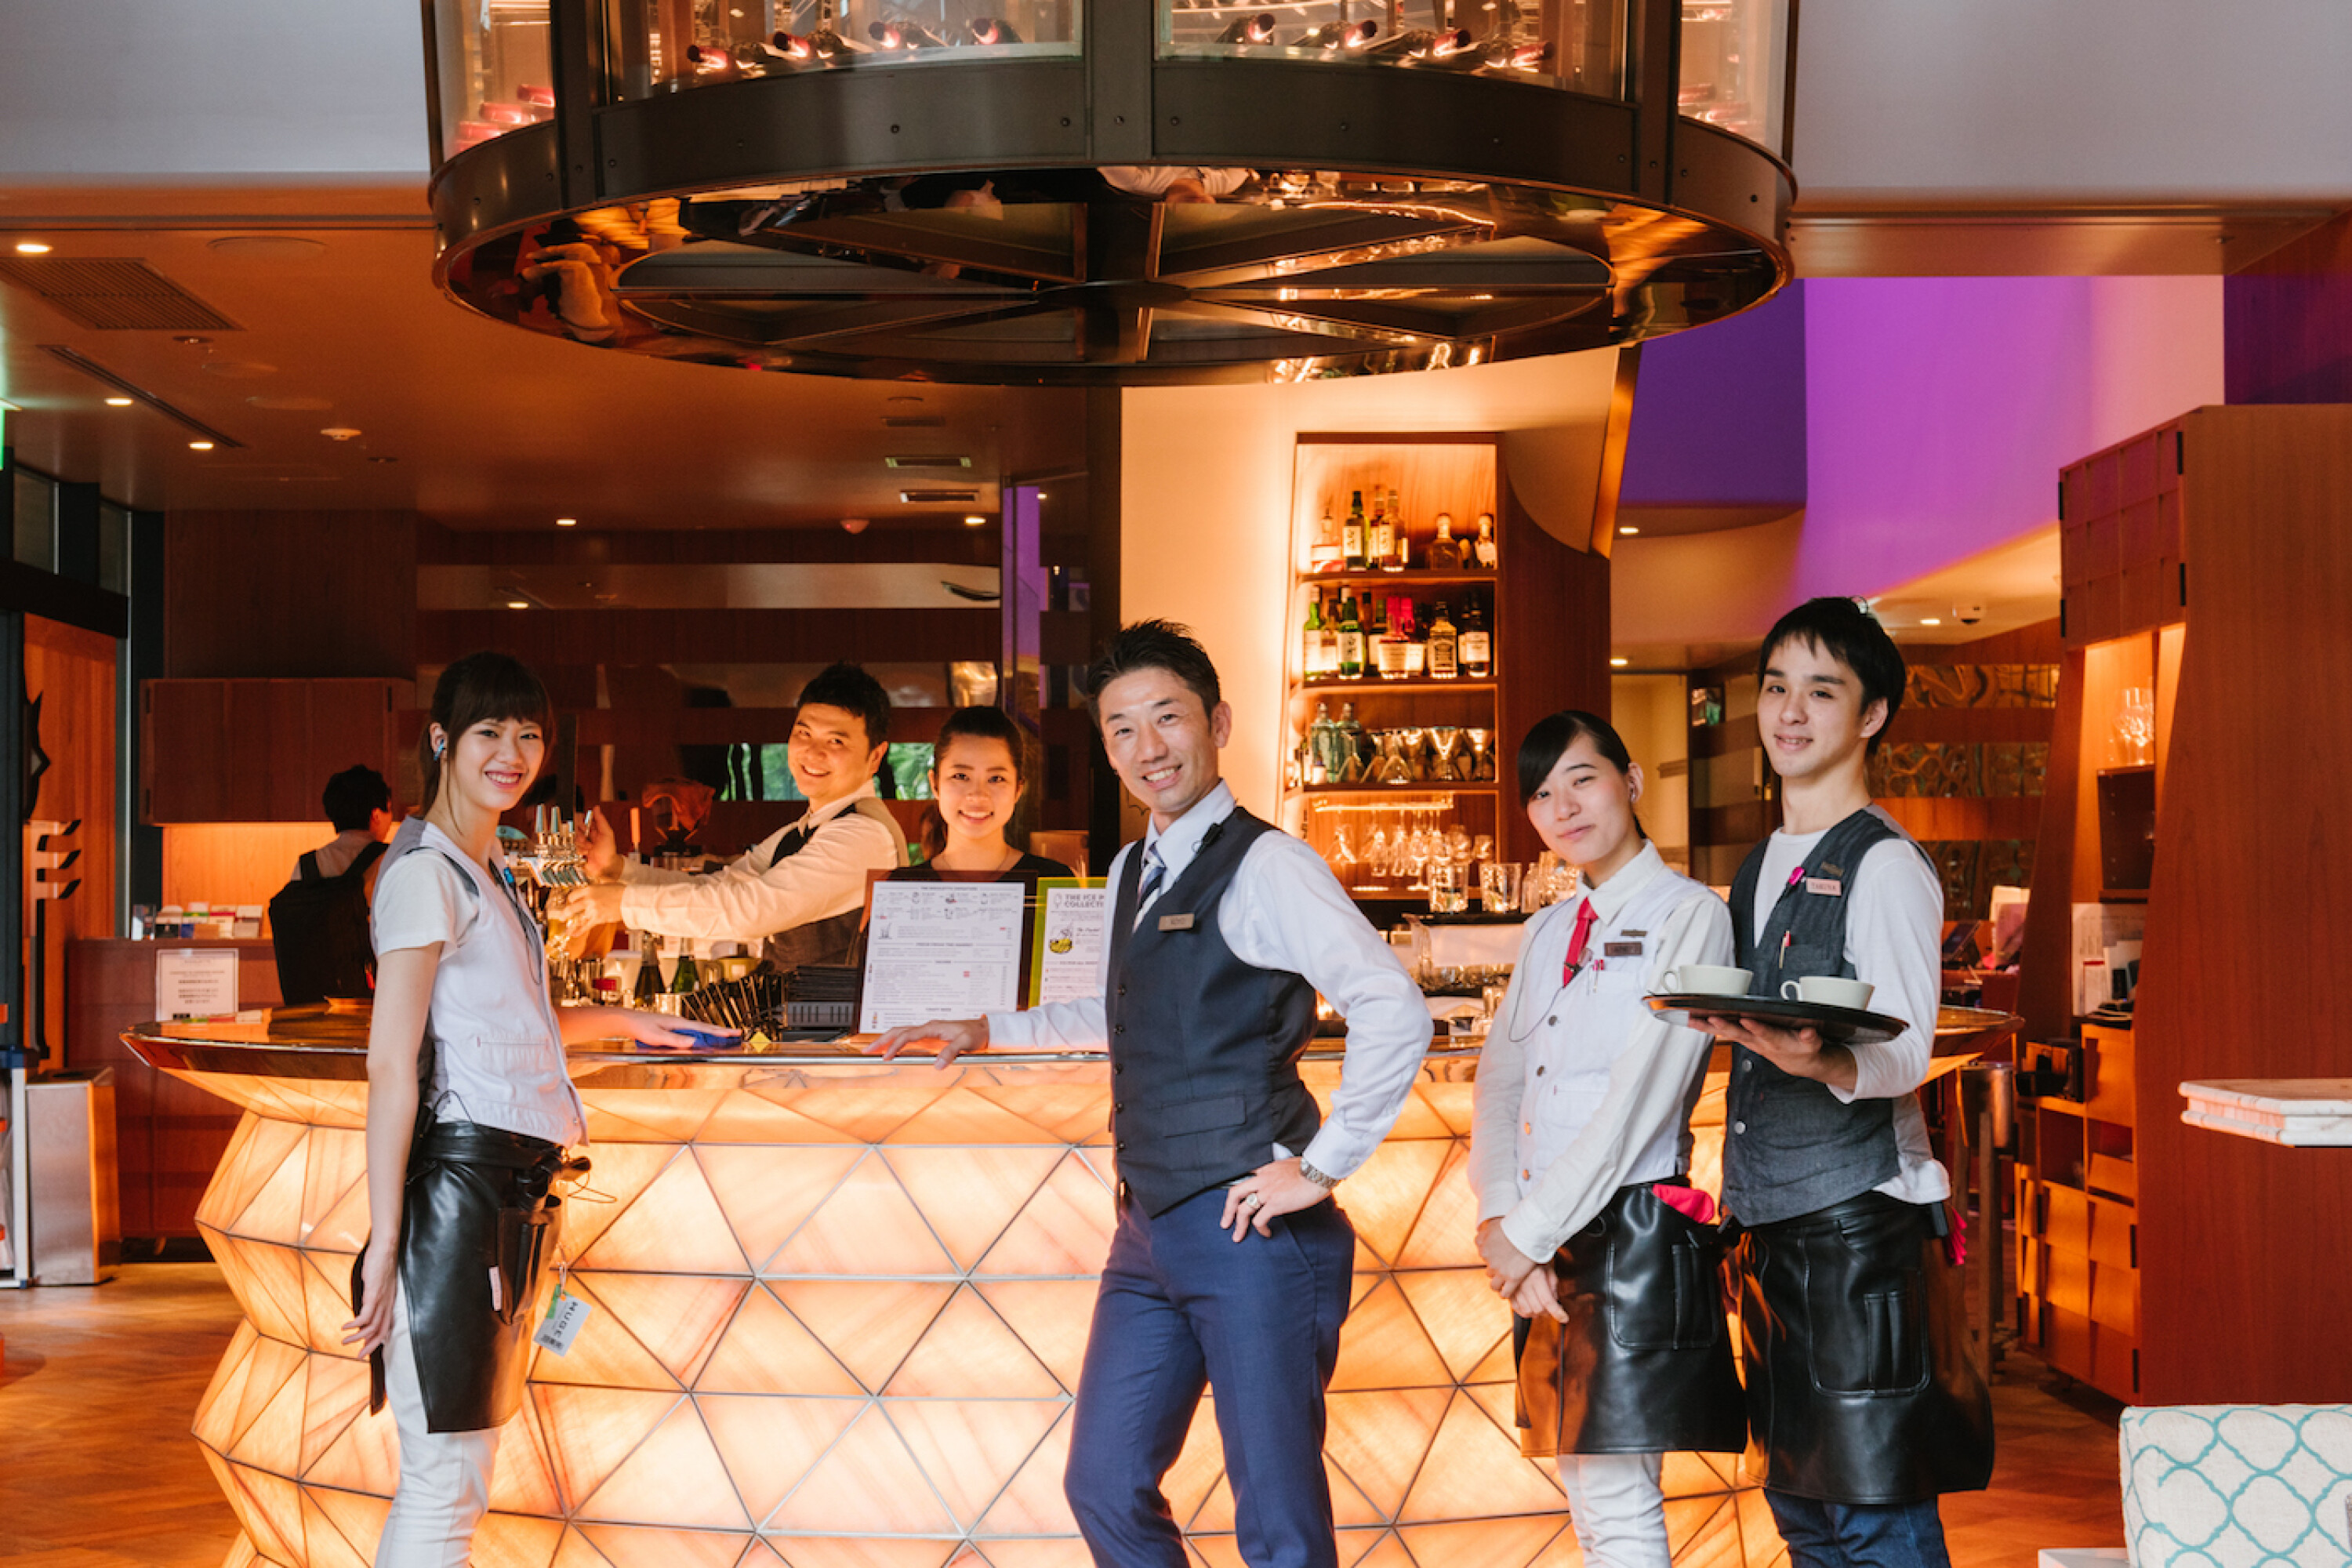 当"旅行在世界的肉铺"在涩谷开创餐厅了的时候